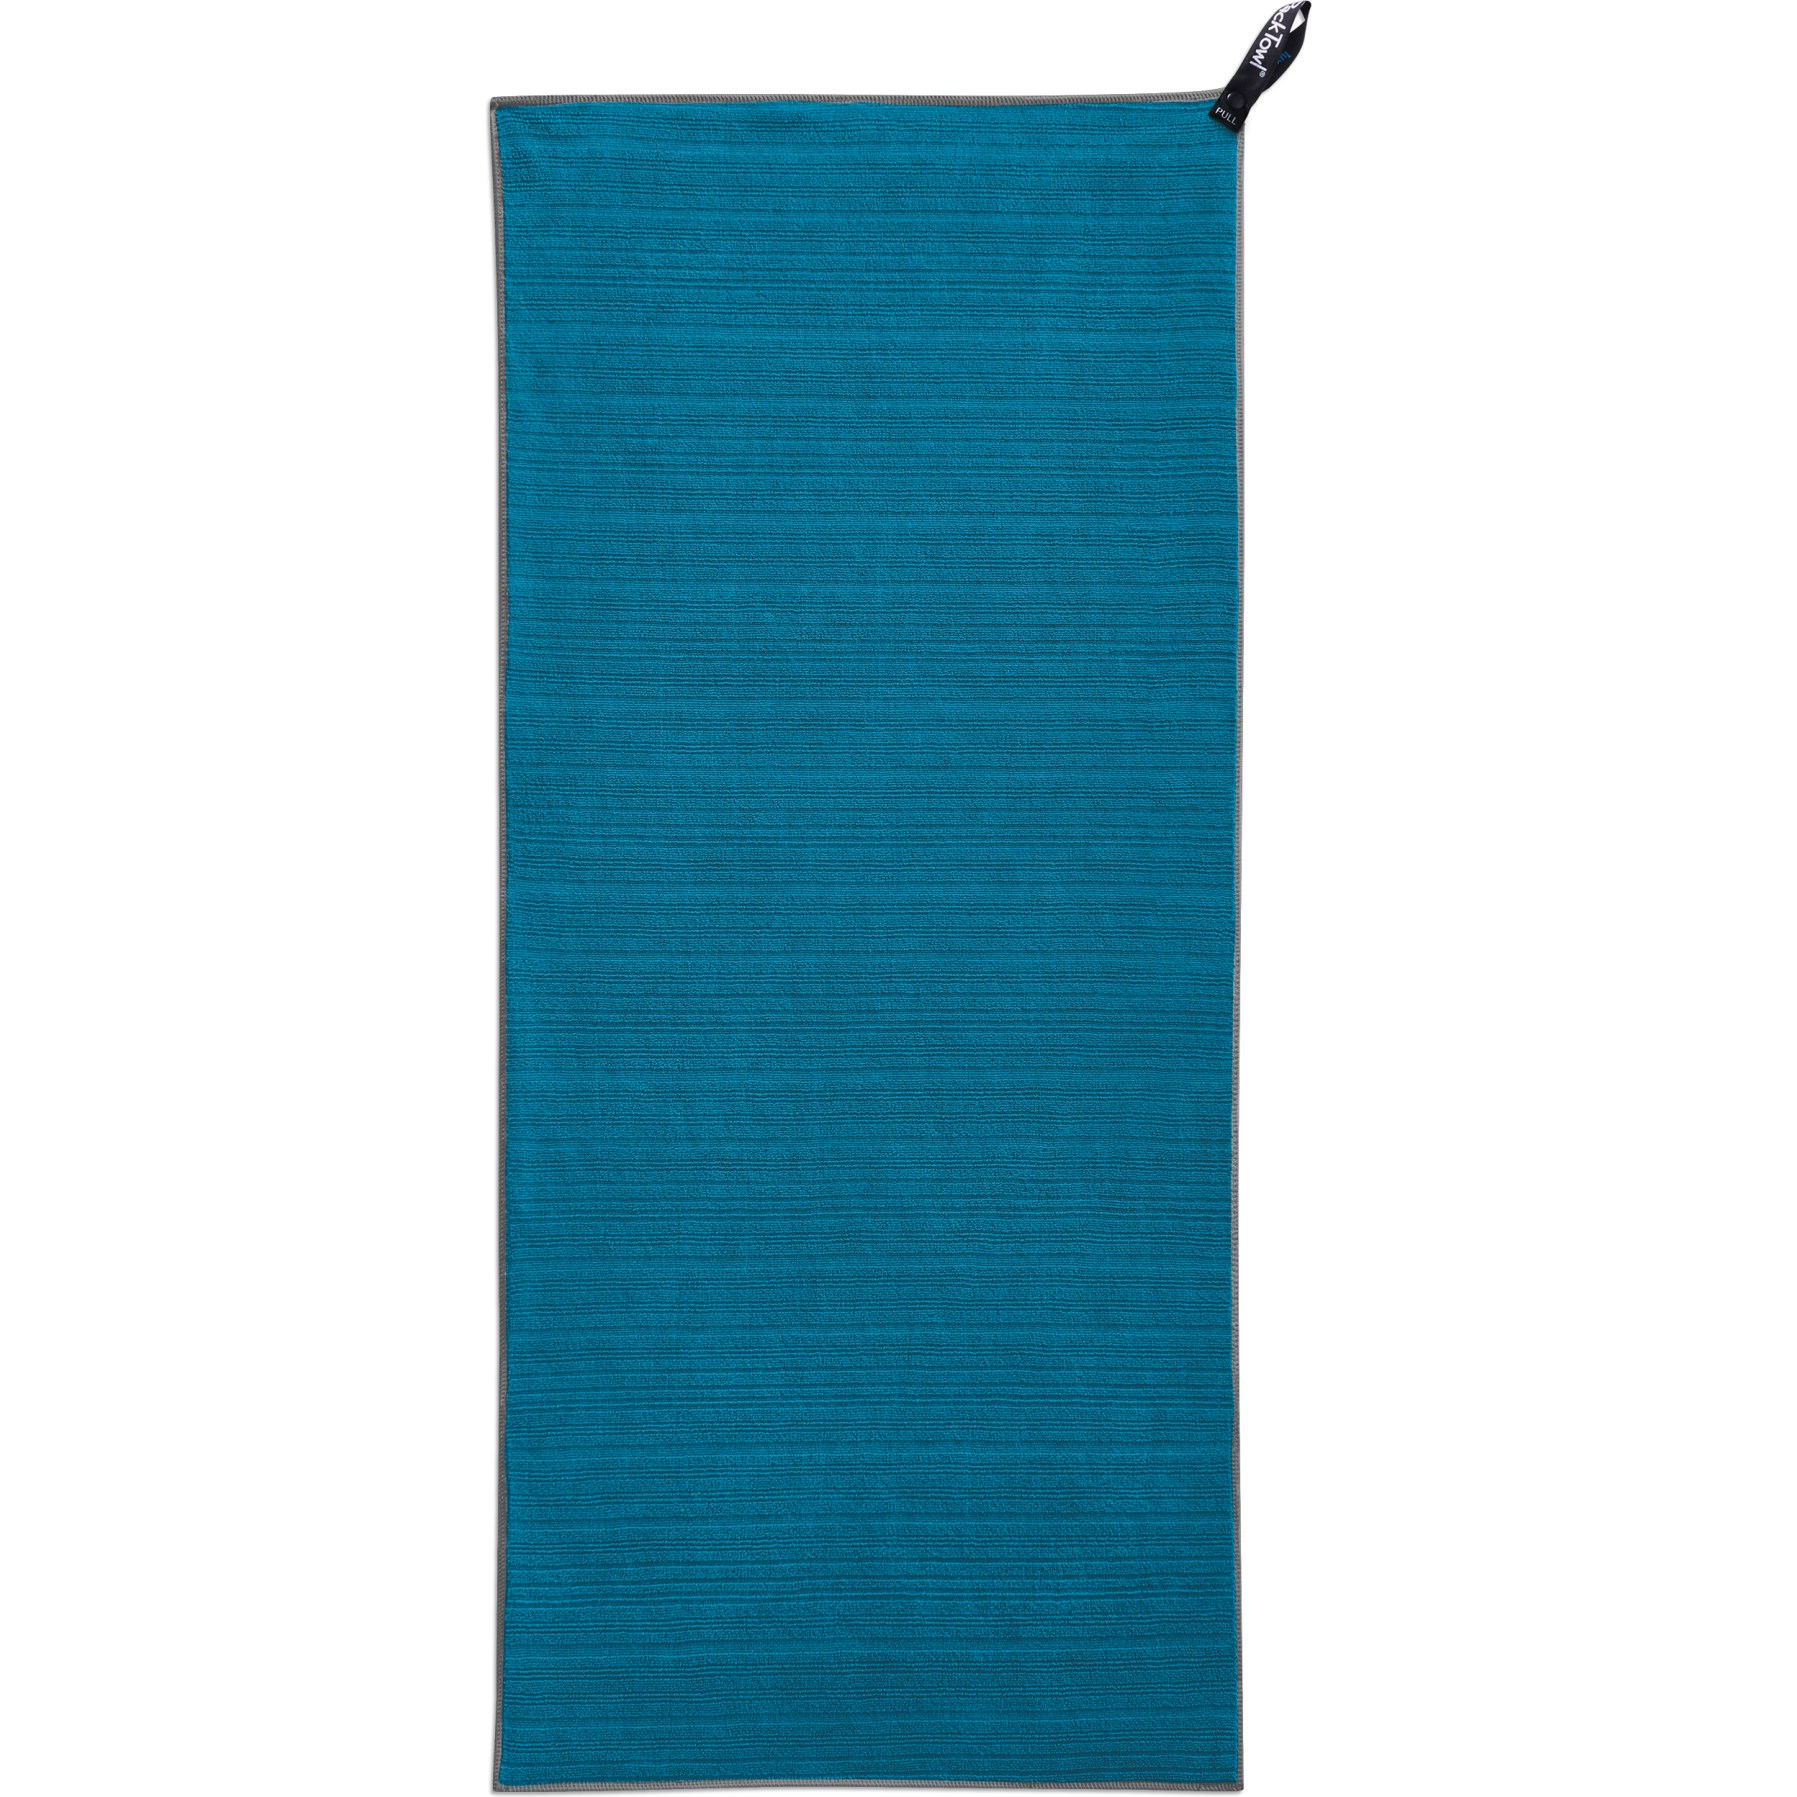 Produktbild von PackTowl Luxe Hand Handtuch - lake blue